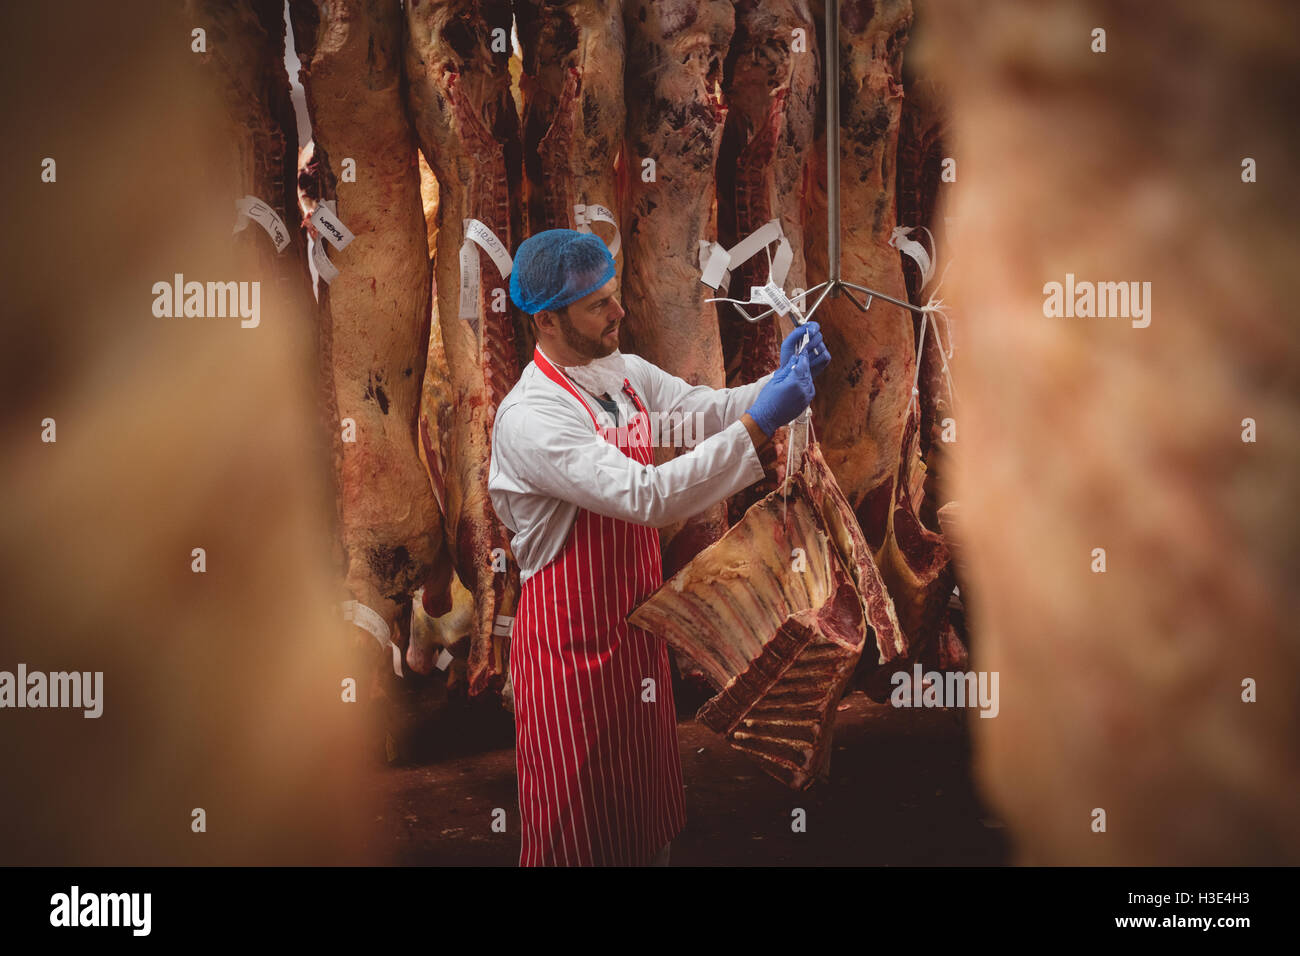 Butcher pendaison viande rouge dans la salle de stockage Banque D'Images